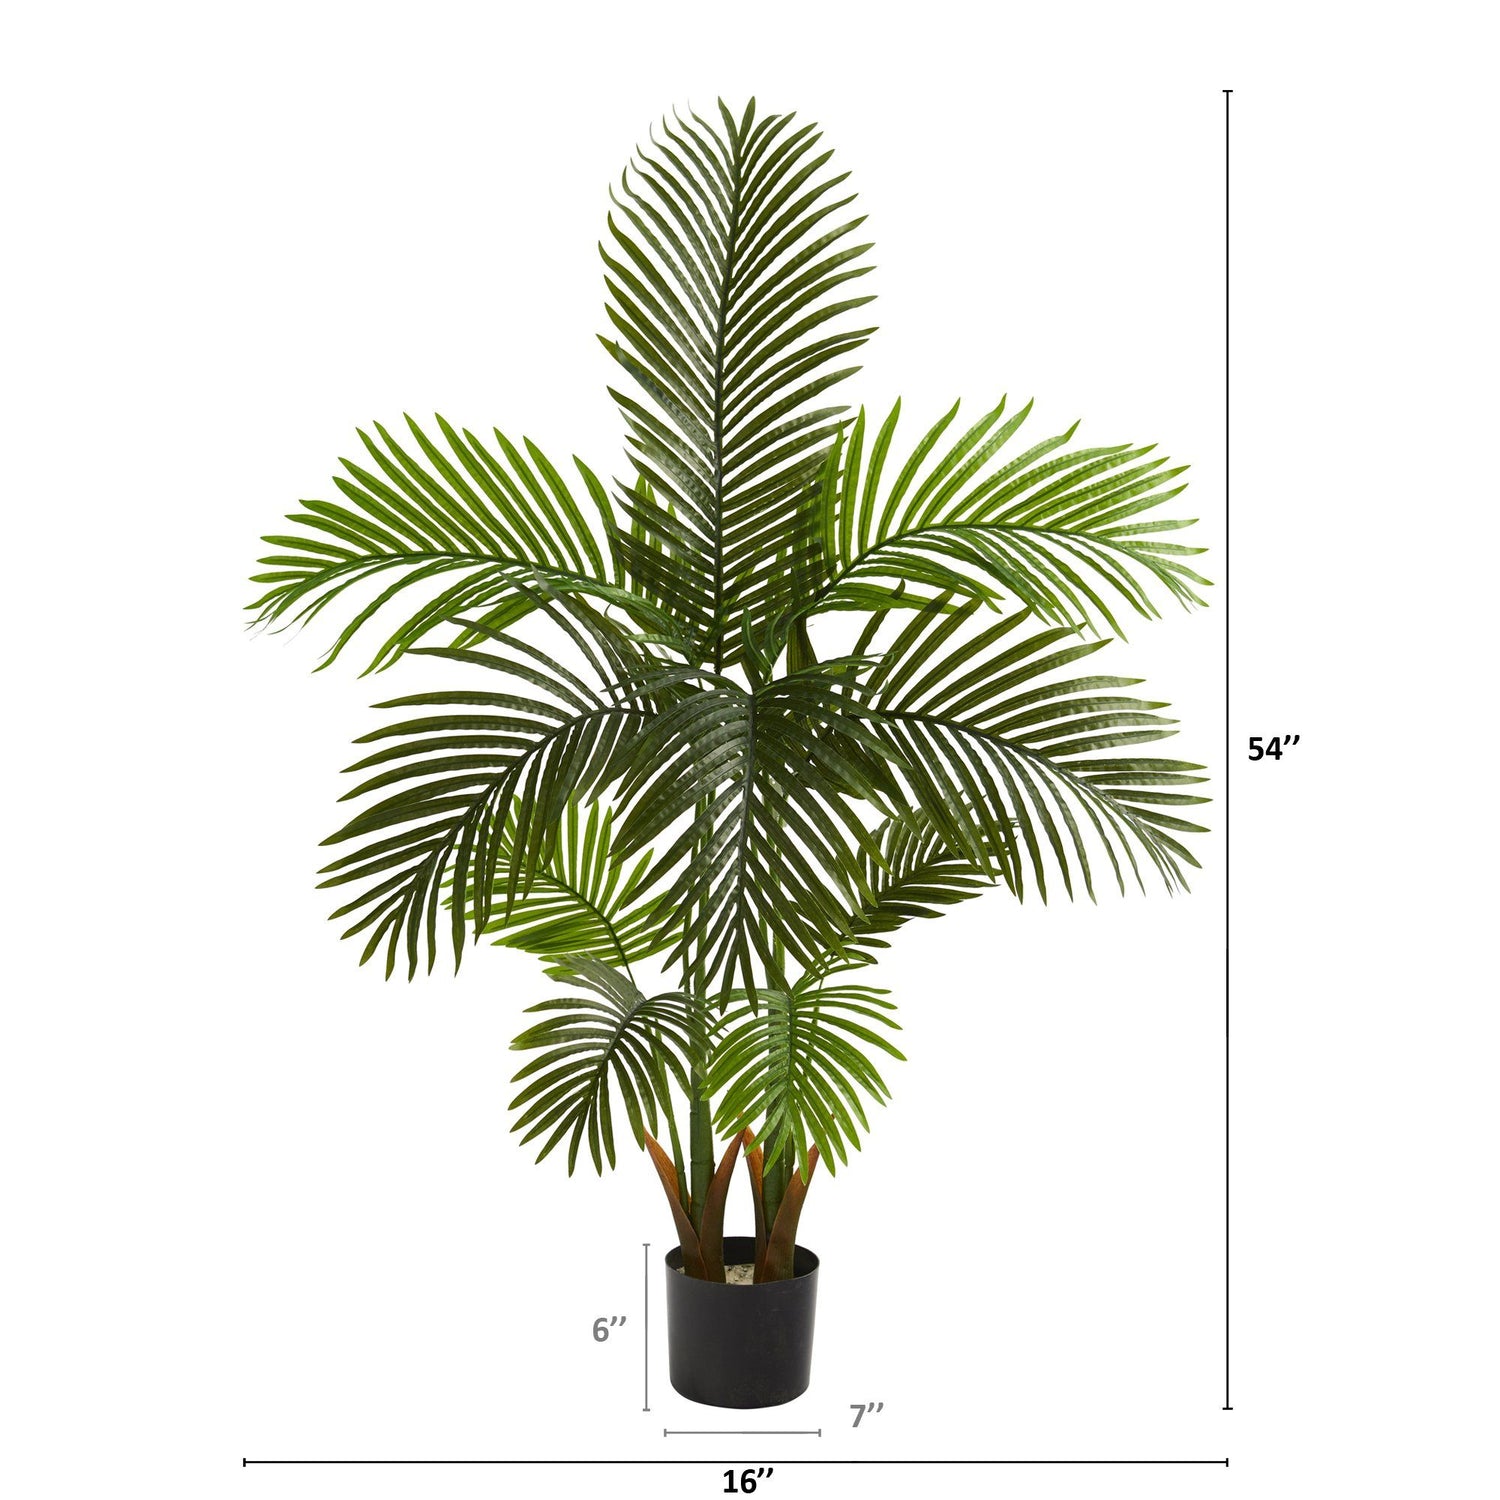 54” Areca Palm Artificial Tree